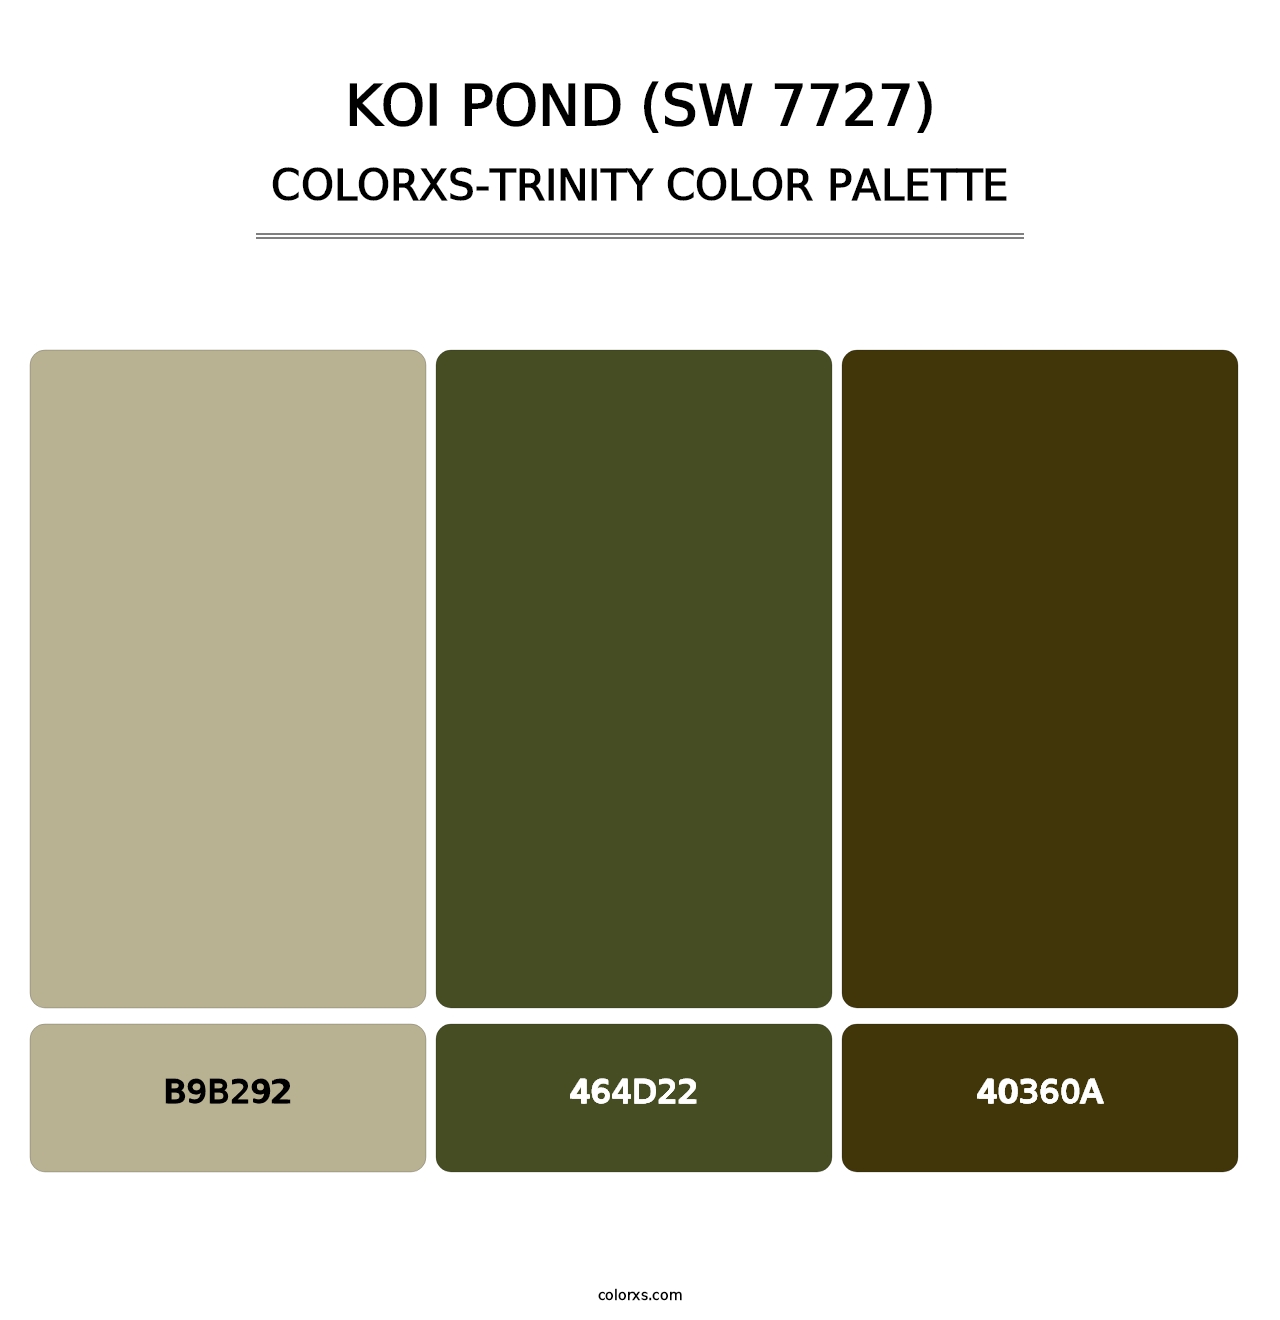 Koi Pond (SW 7727) - Colorxs Trinity Palette